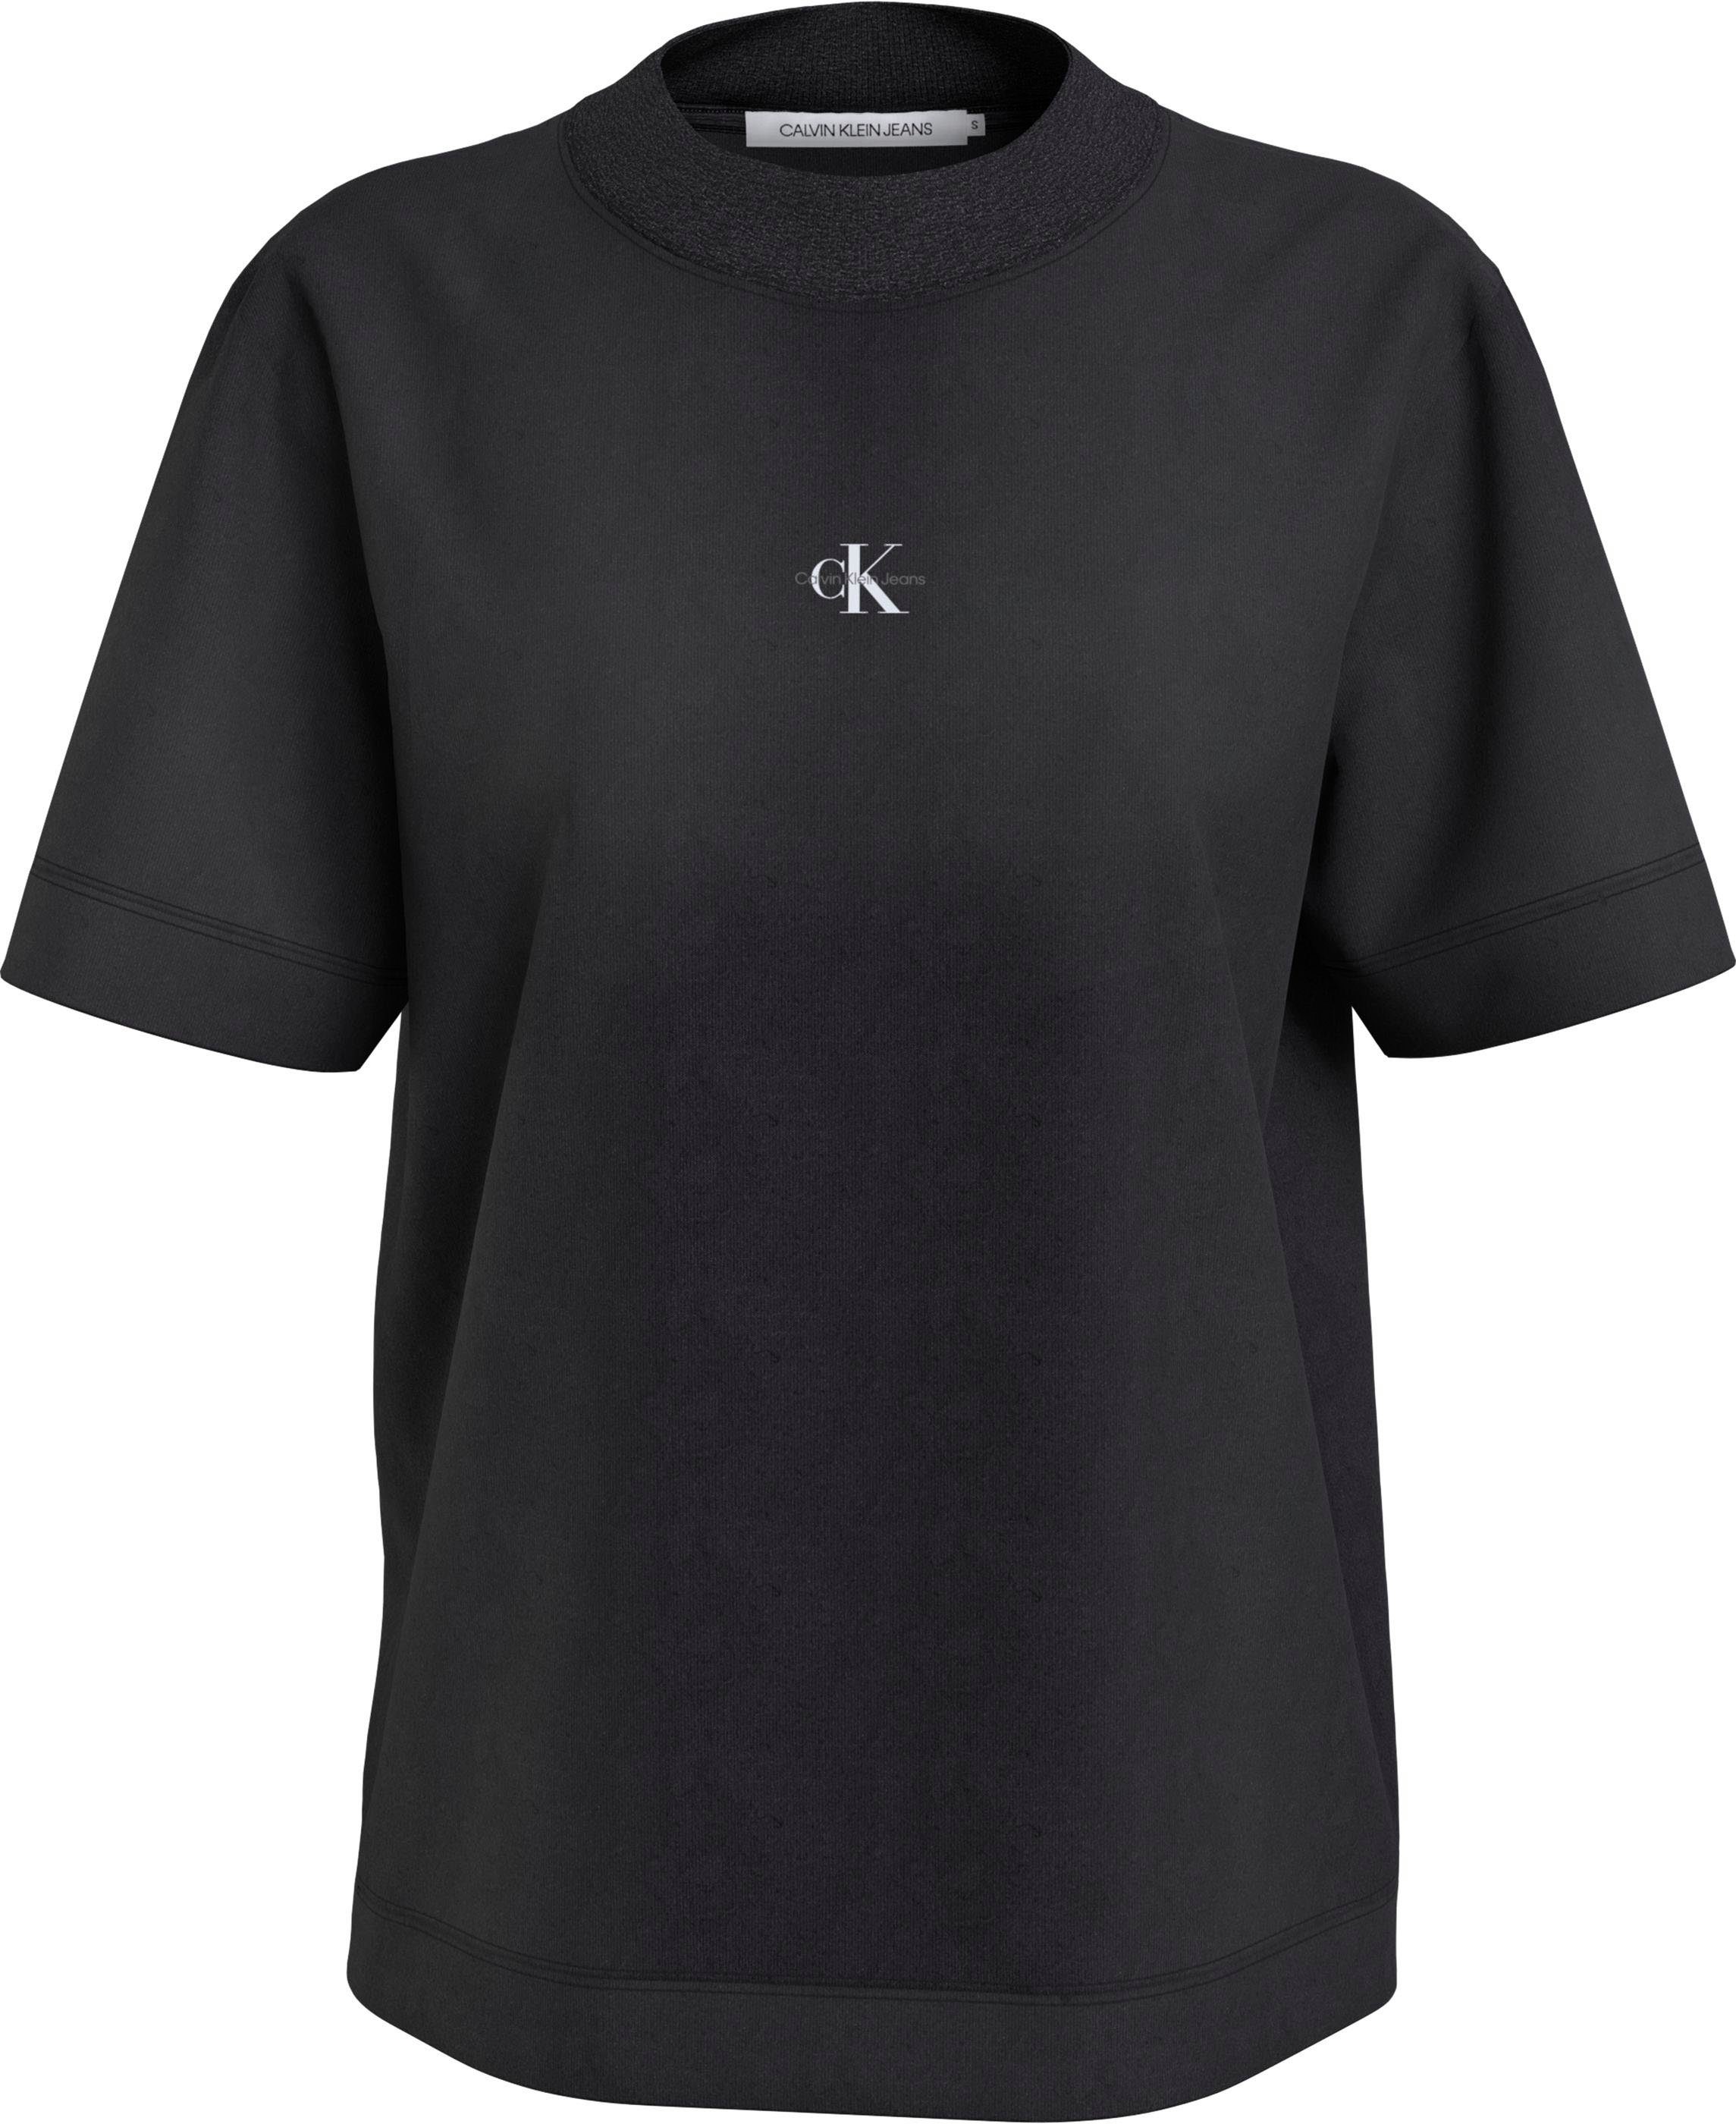 Ck BOYFRIEND TEE T-Shirt reiner Black WASH Jeans RIB Klein aus Baumwolle MIX Calvin